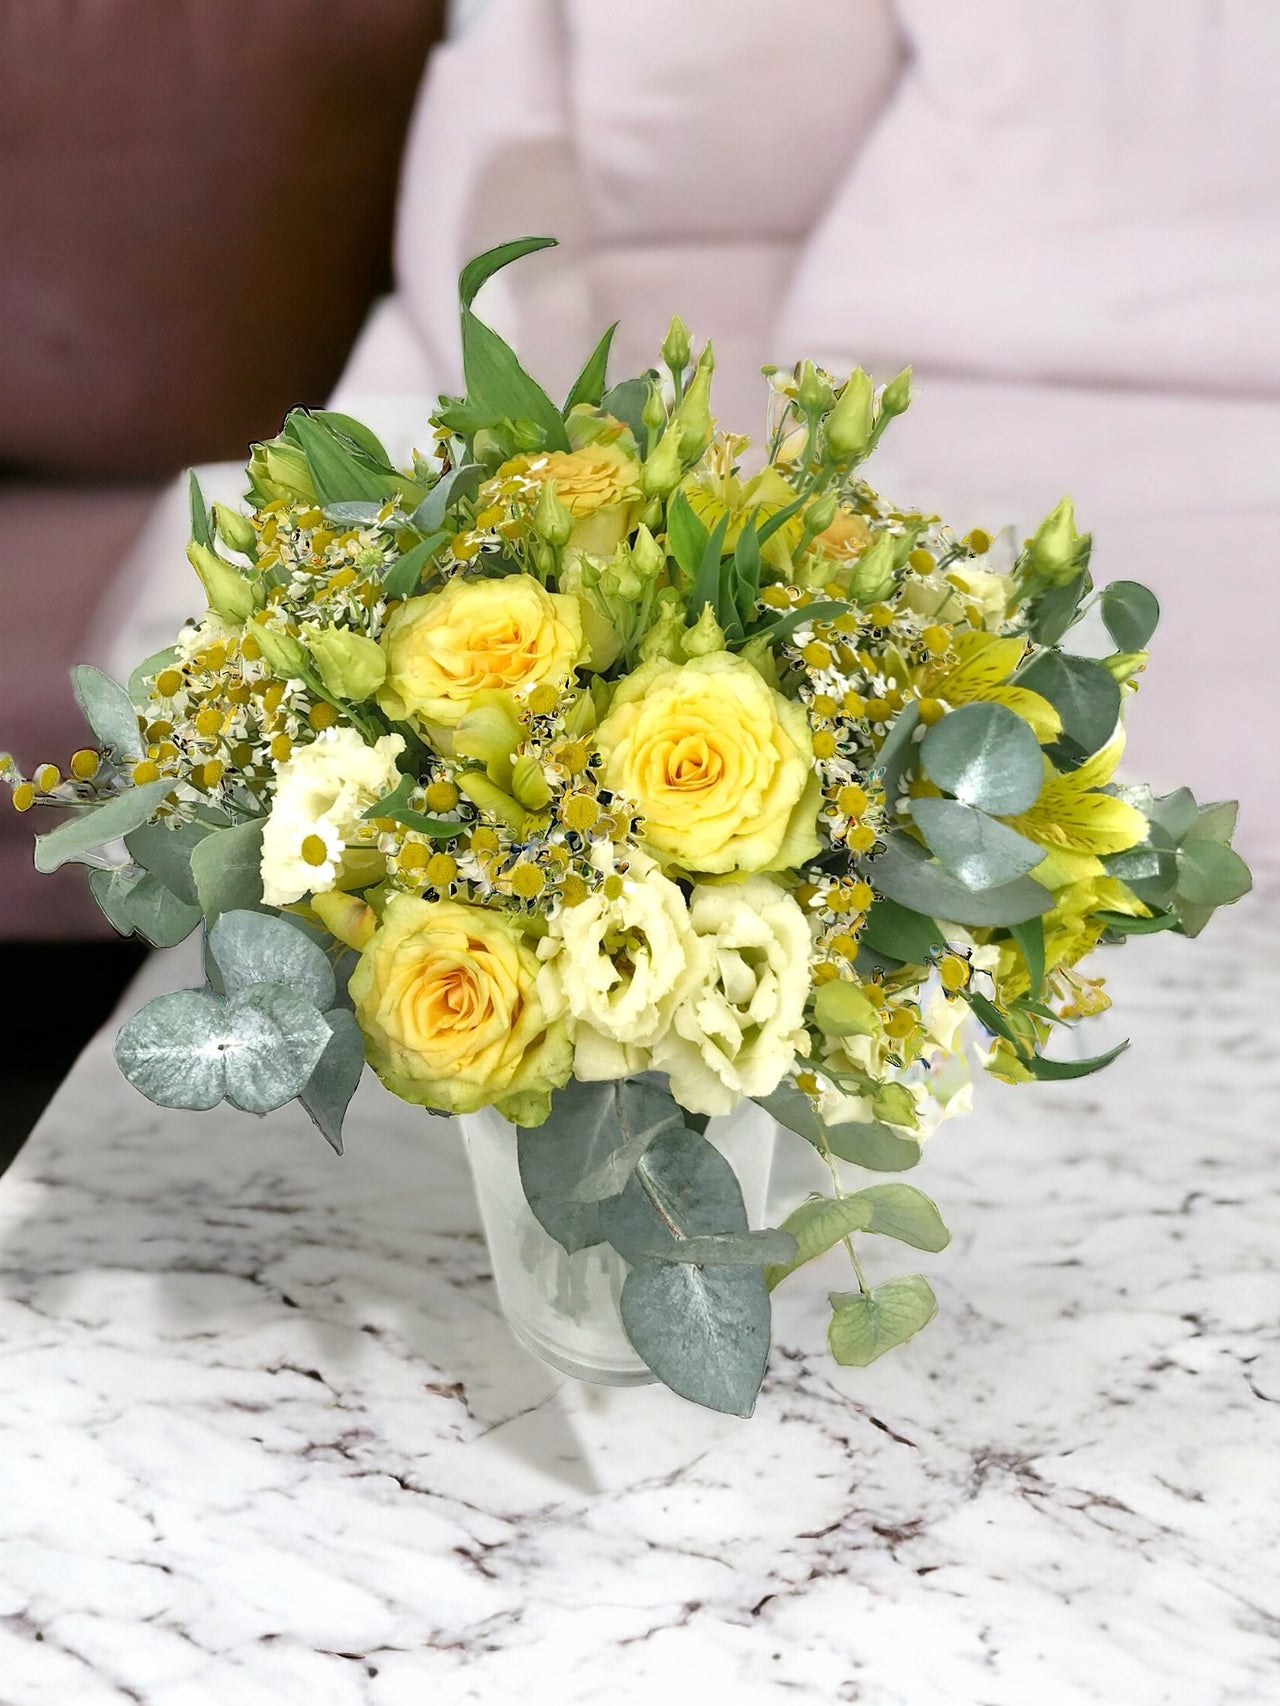 Envoi bouquet de fleurs jaunes - Grand bouquet 